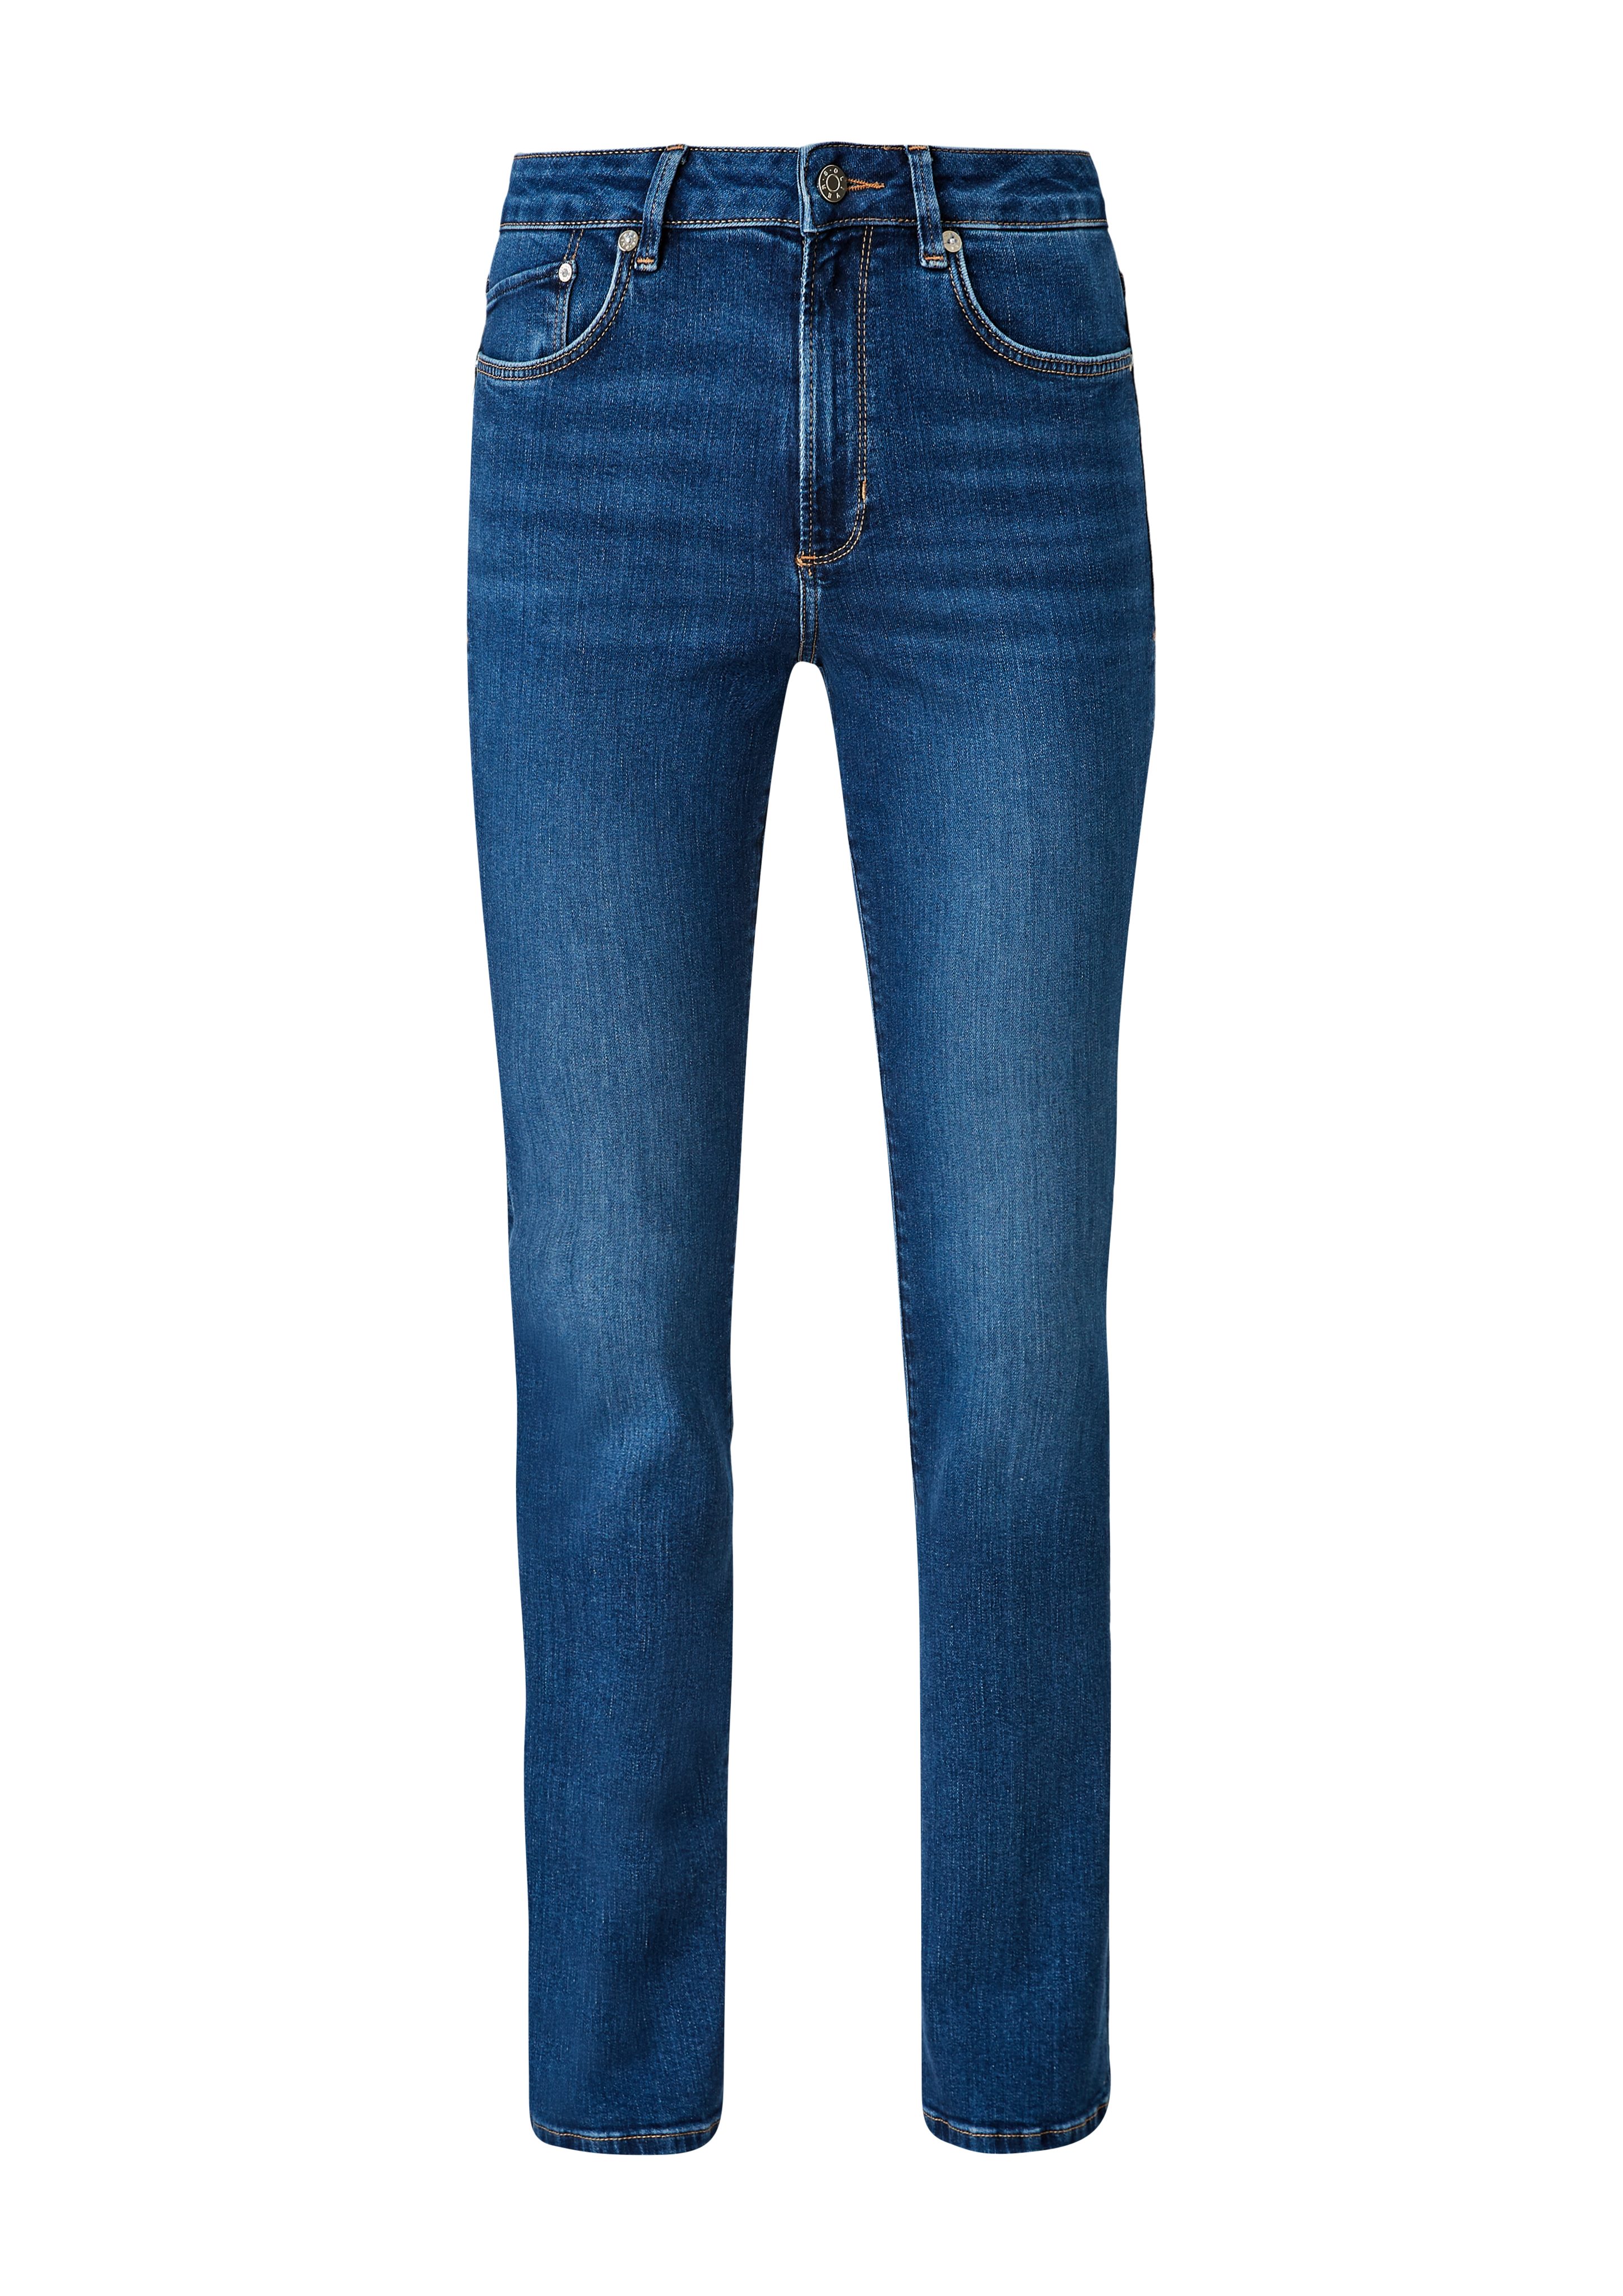 Fit Beverly Bootcut / Leder-Patch Jeans Rise 5-Pocket-Jeans s.Oliver Mid / Leg / Slim